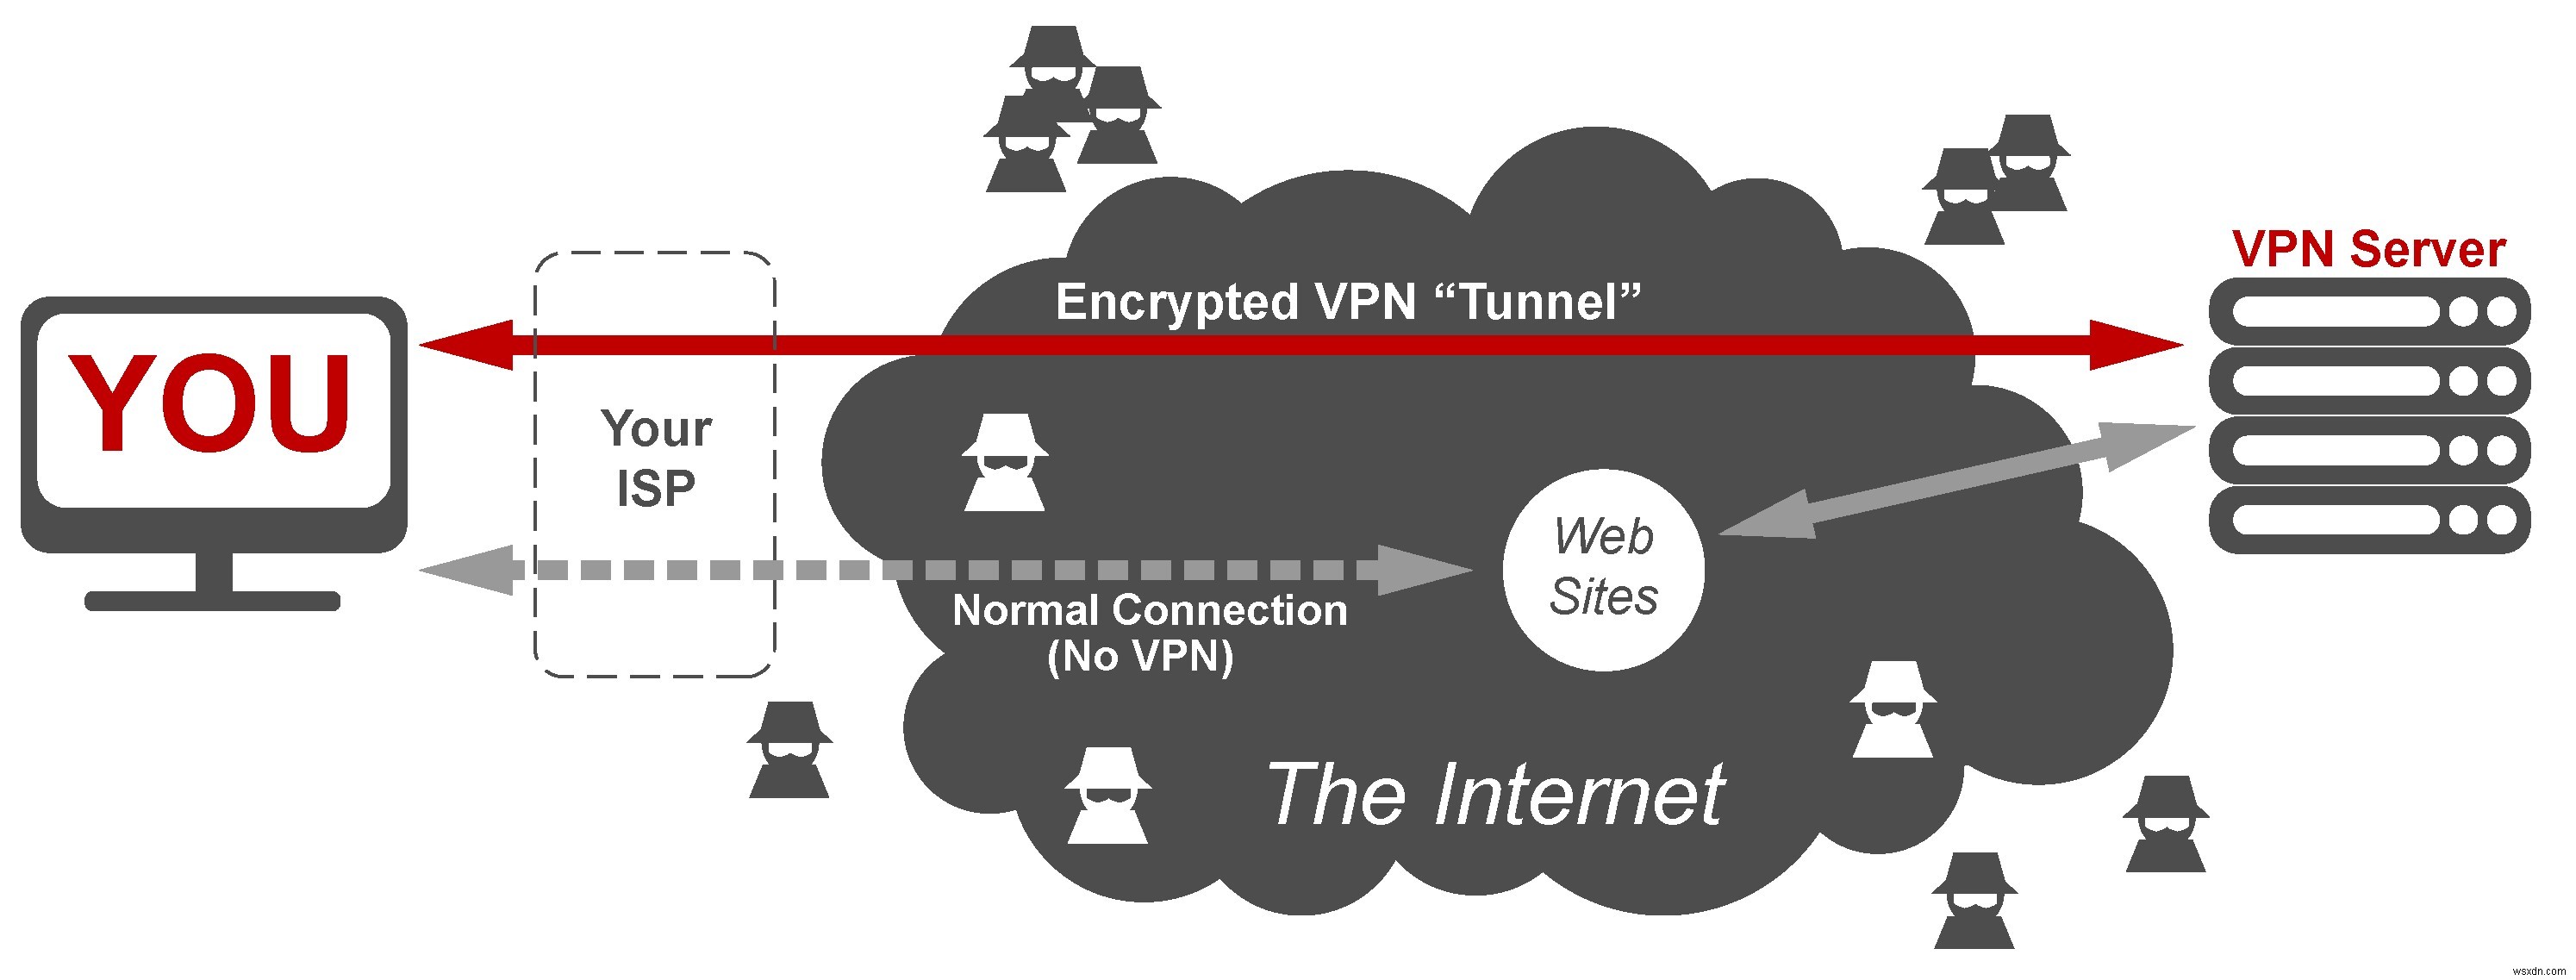 개인 정보 보호 및 온라인 안전을 보장하는 방법 